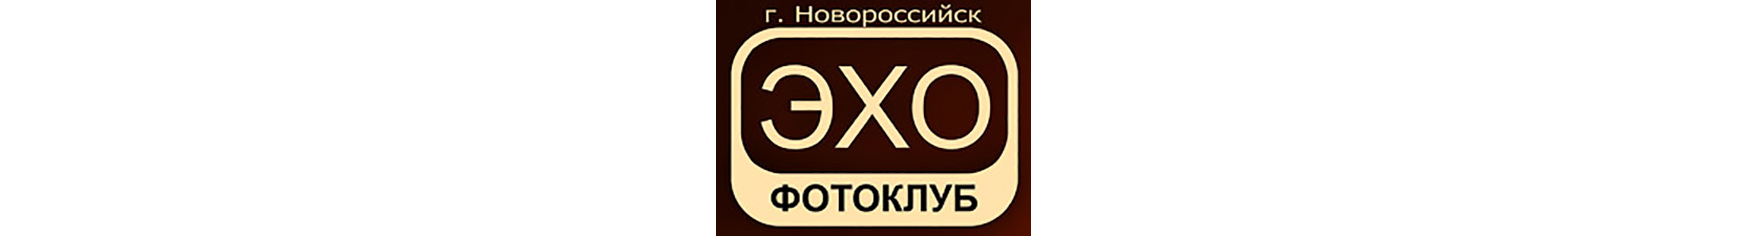 Эхо Новороссийск